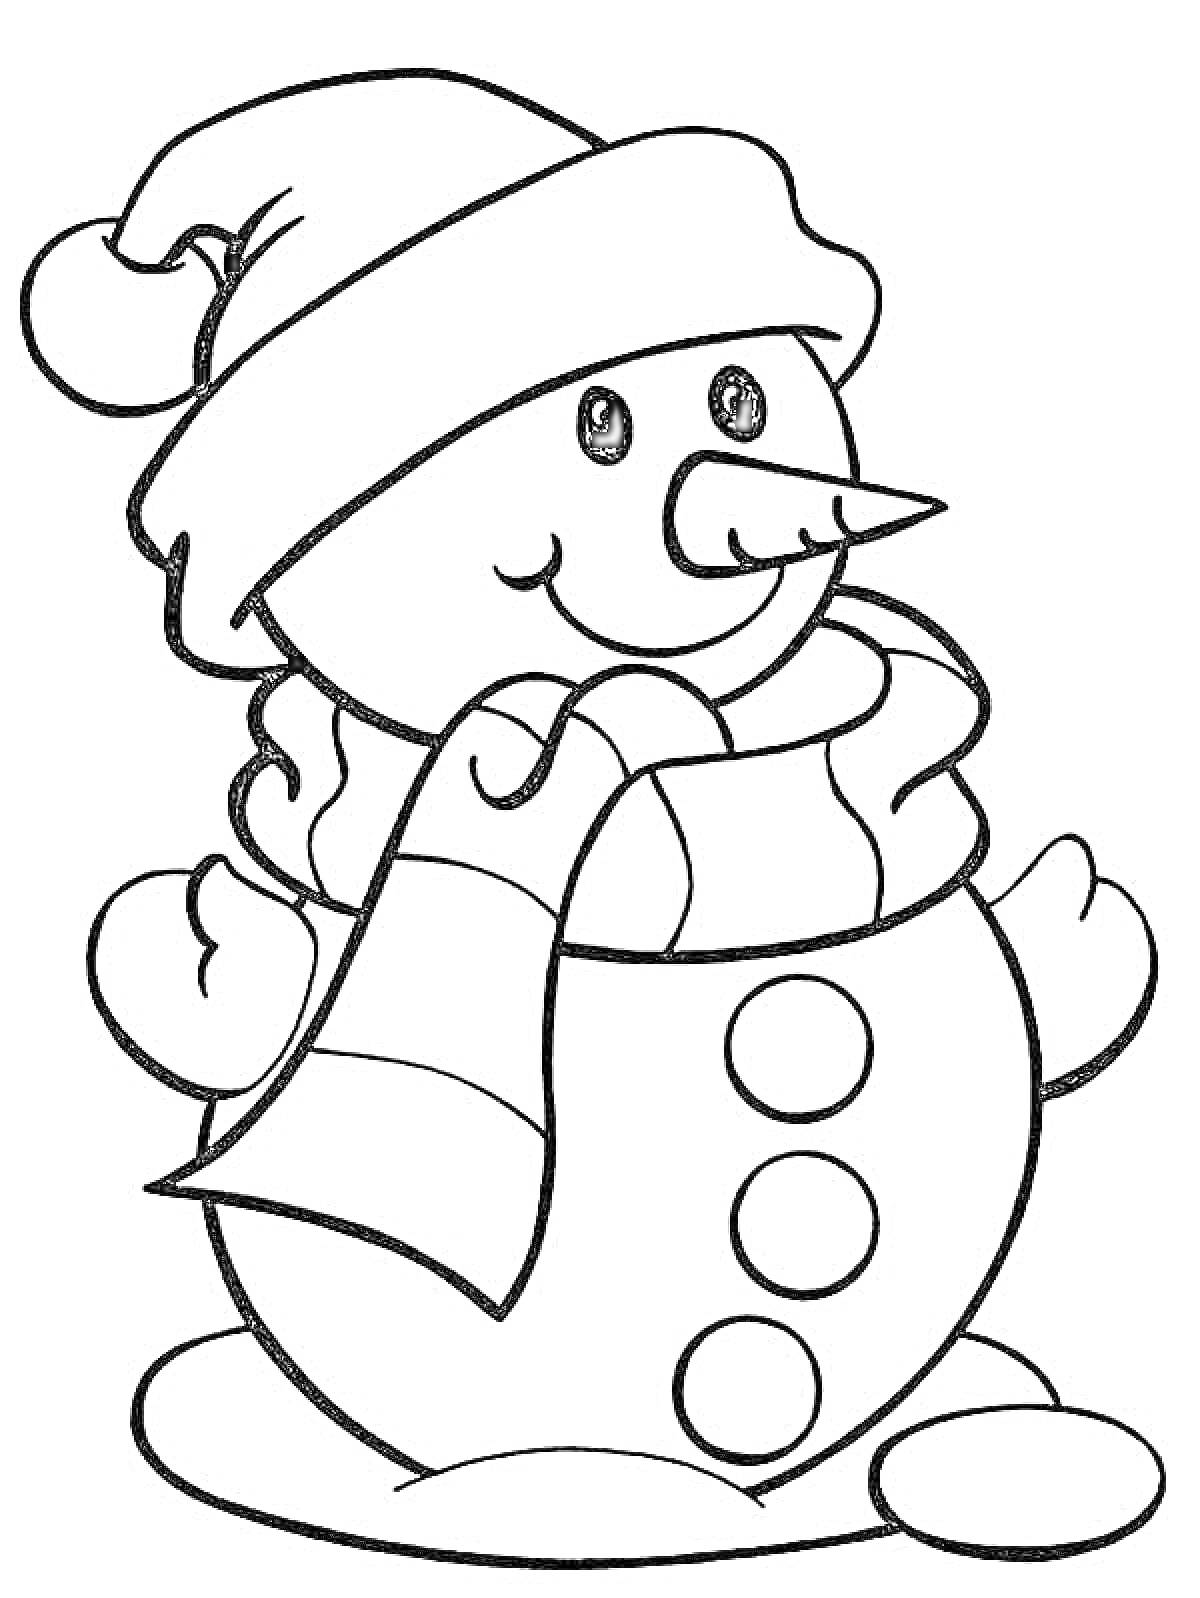 Раскраска Снеговик в шапке и шарфе с тремя пуговицами